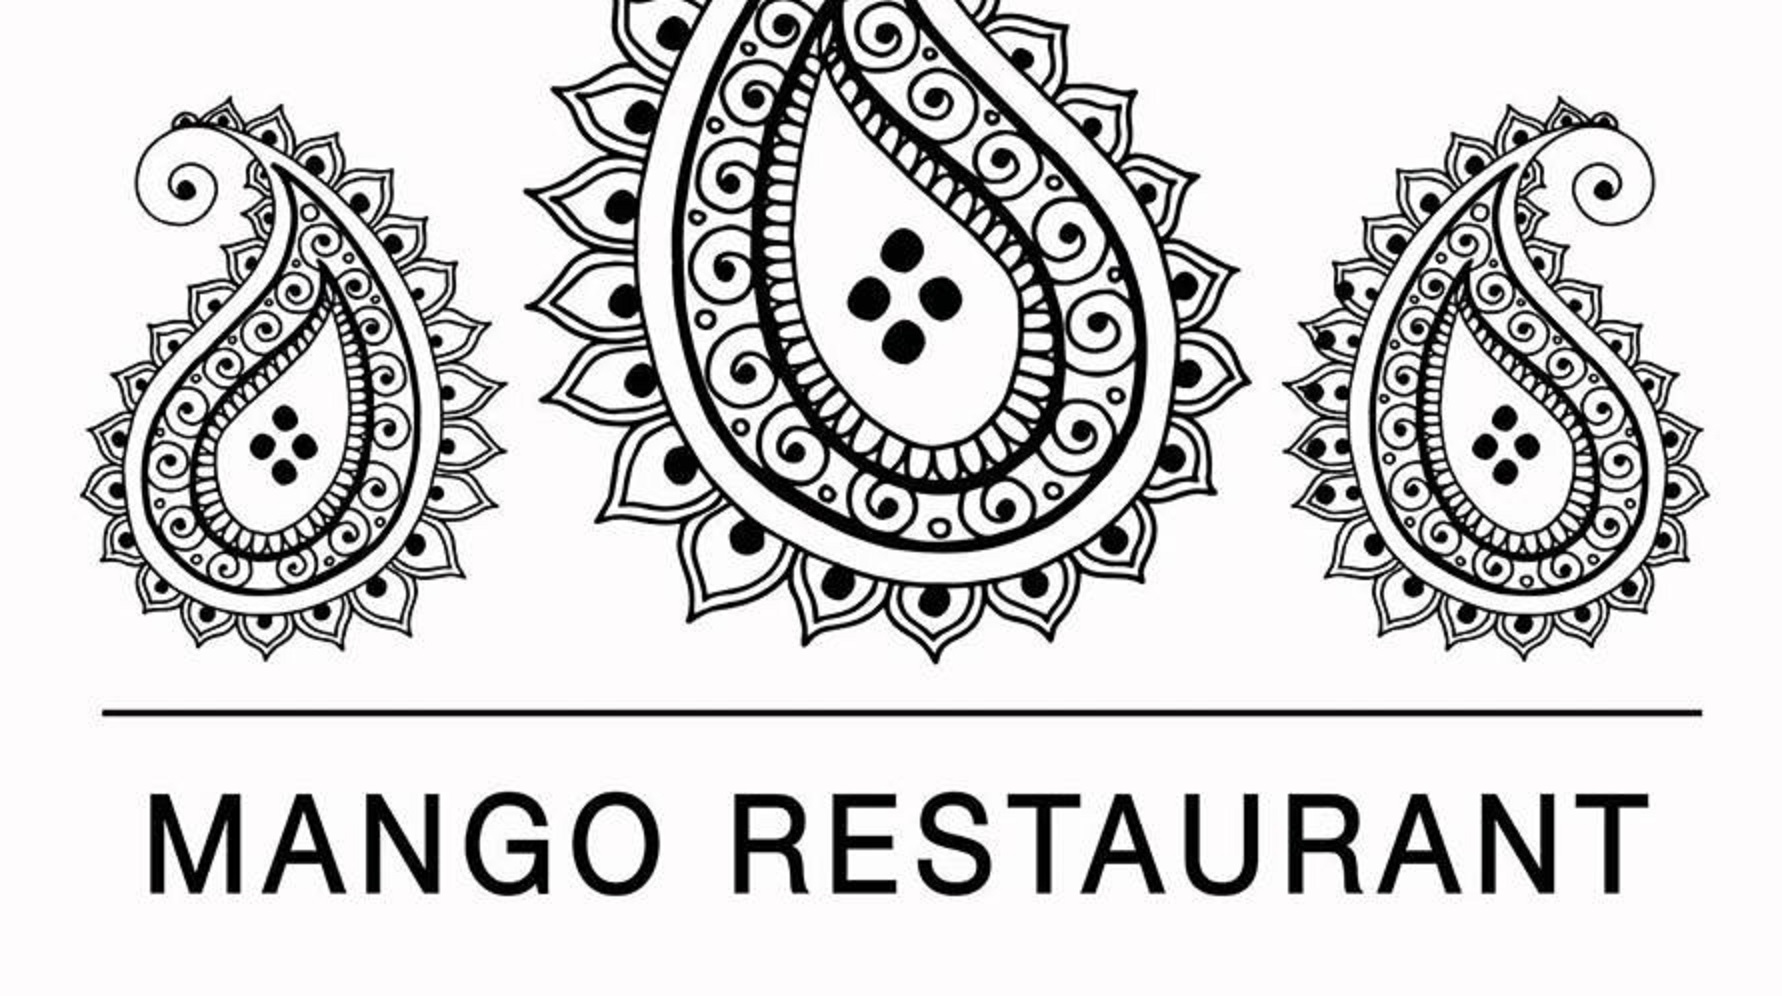 Mango Vegetarian Restaurant